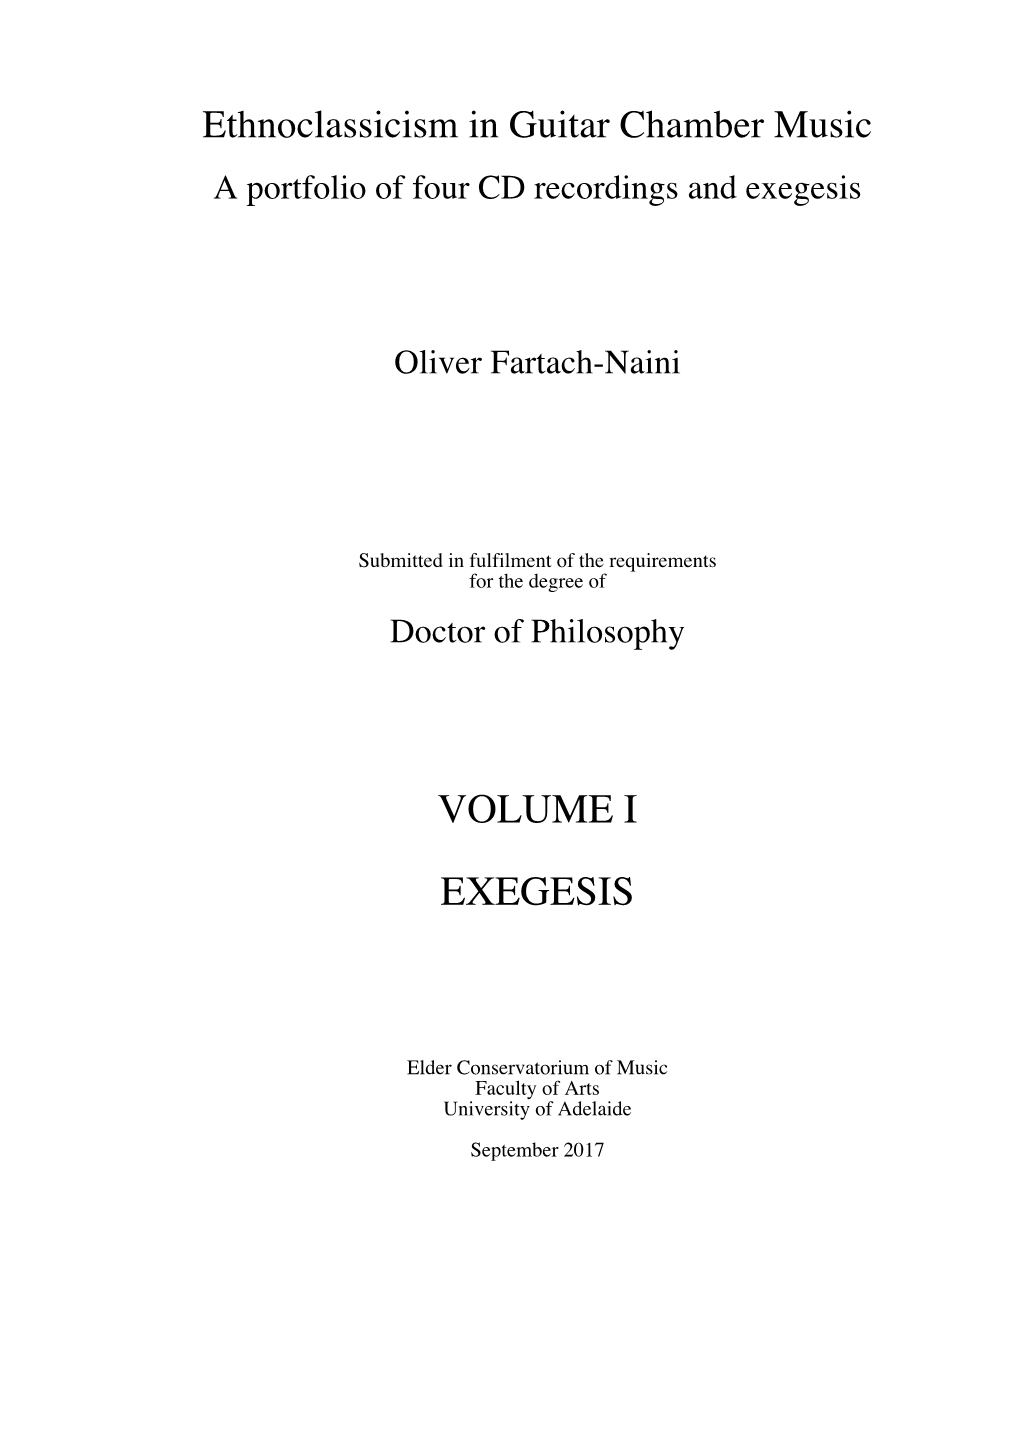 Volume I Exegesis